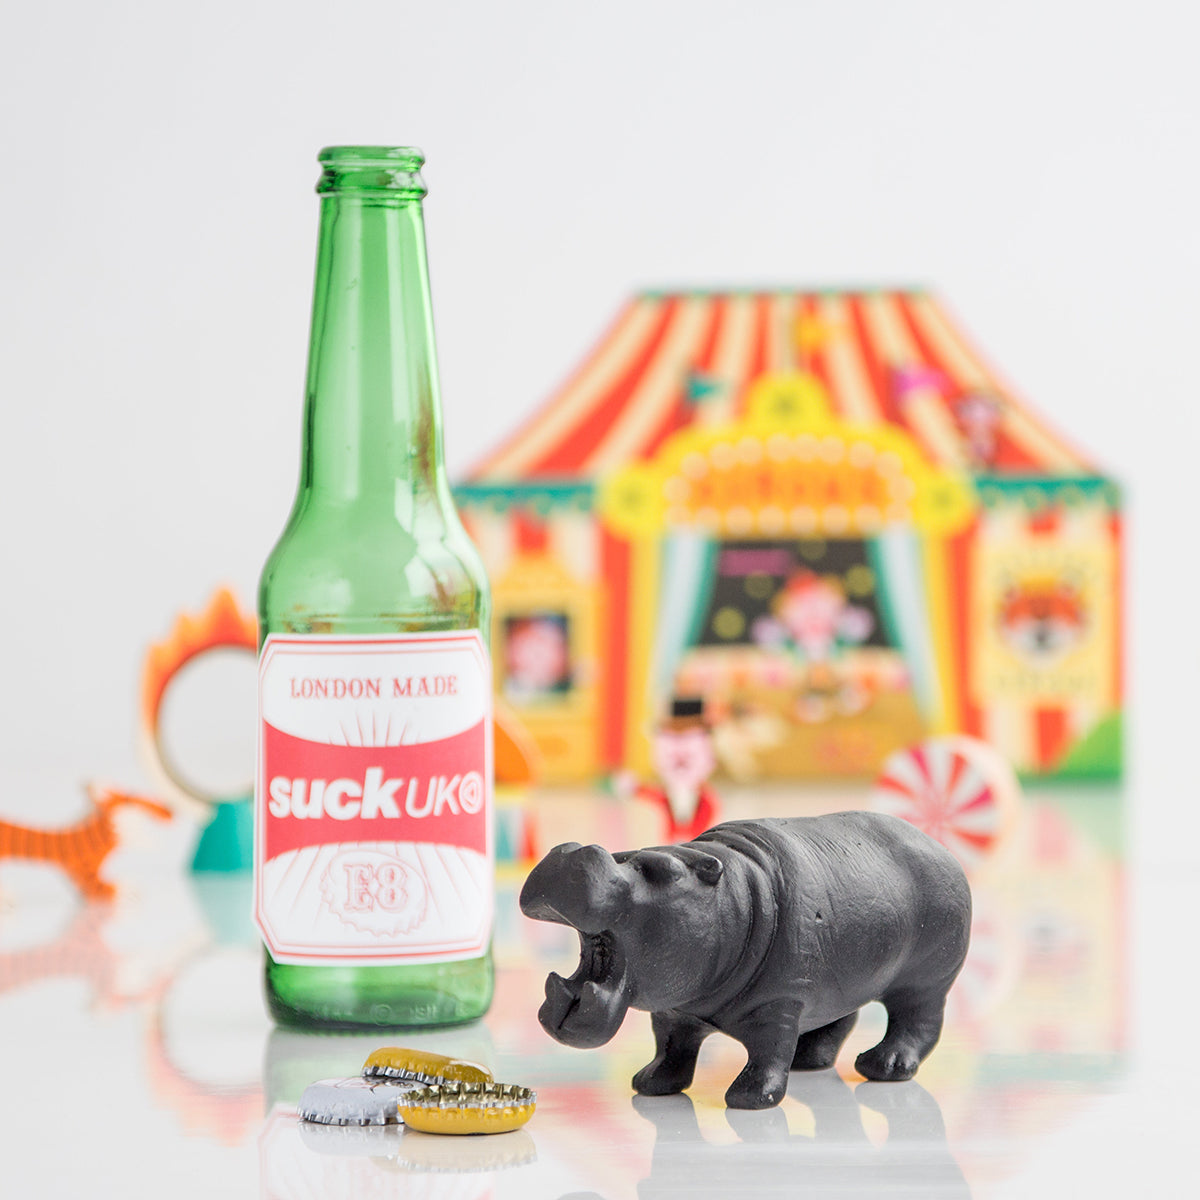 Bottle Opener Hippo